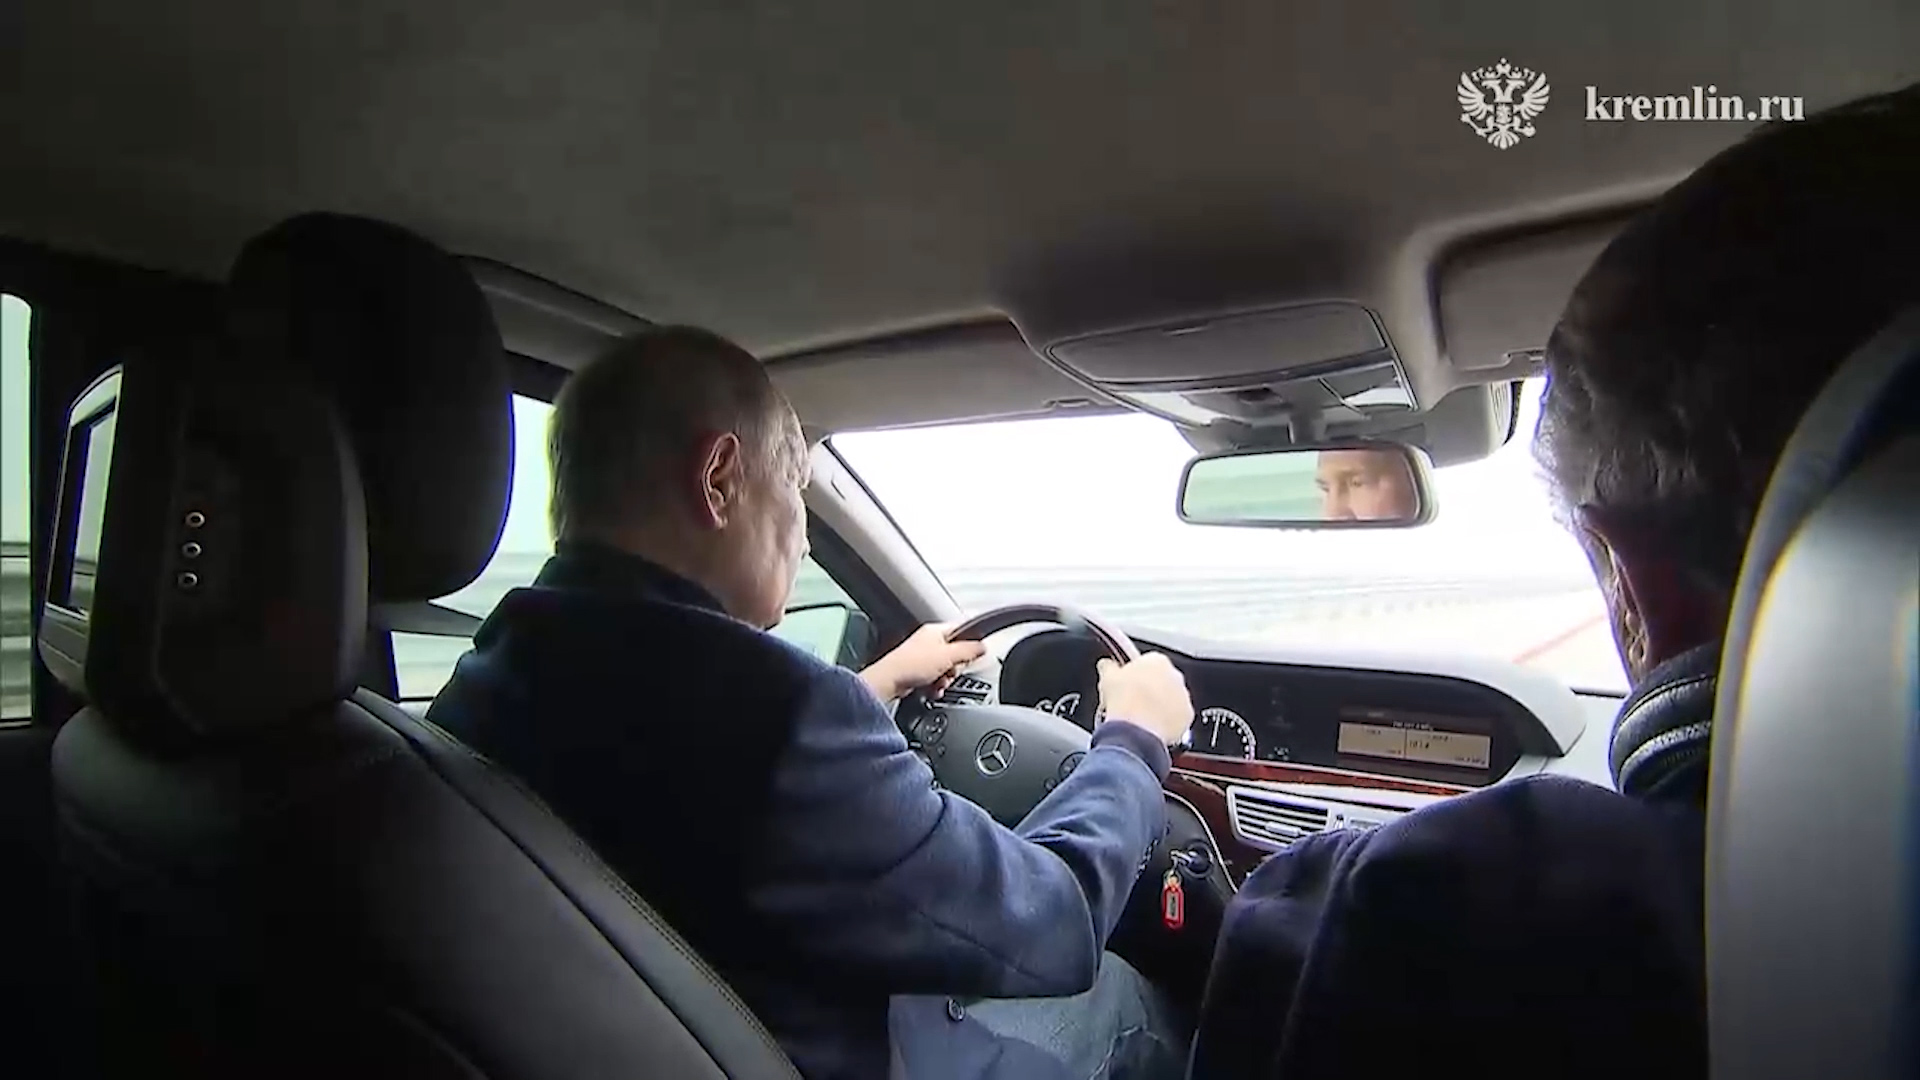 بوتين يتفقد جسر القرم ويعبره بسيارته